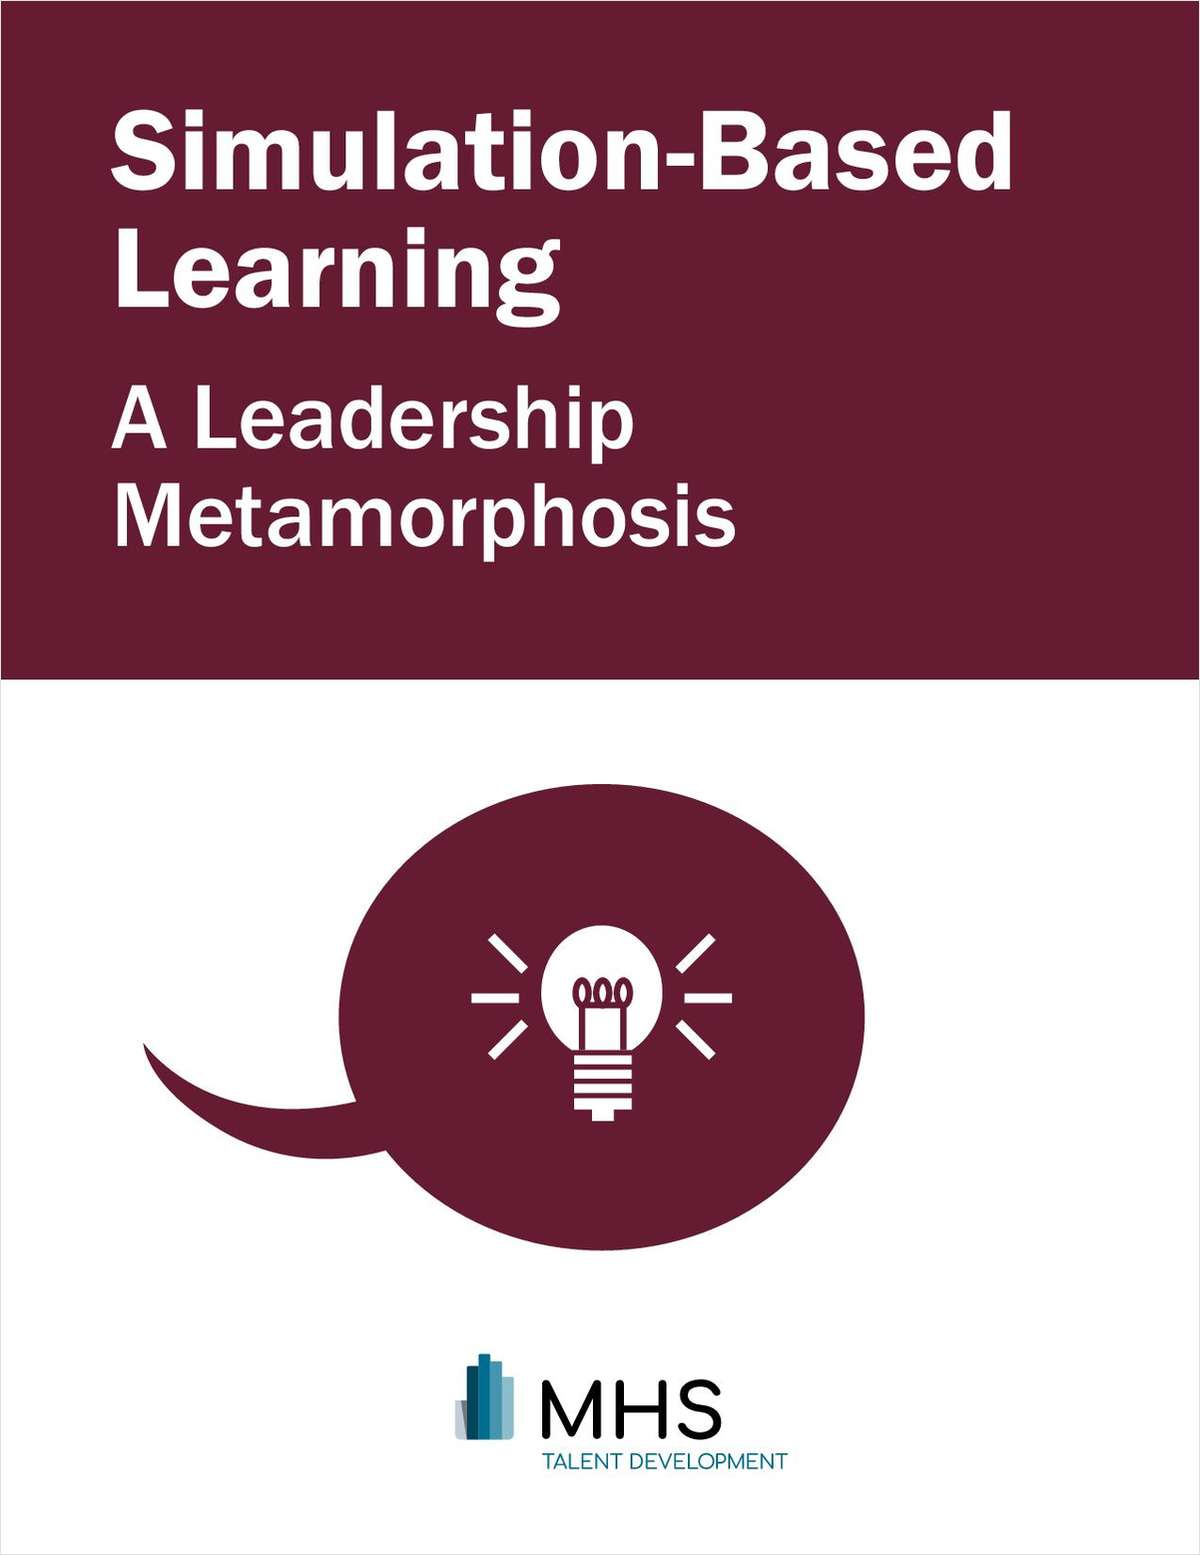 Simulation-based Learning: A Leadership Metamorphosis